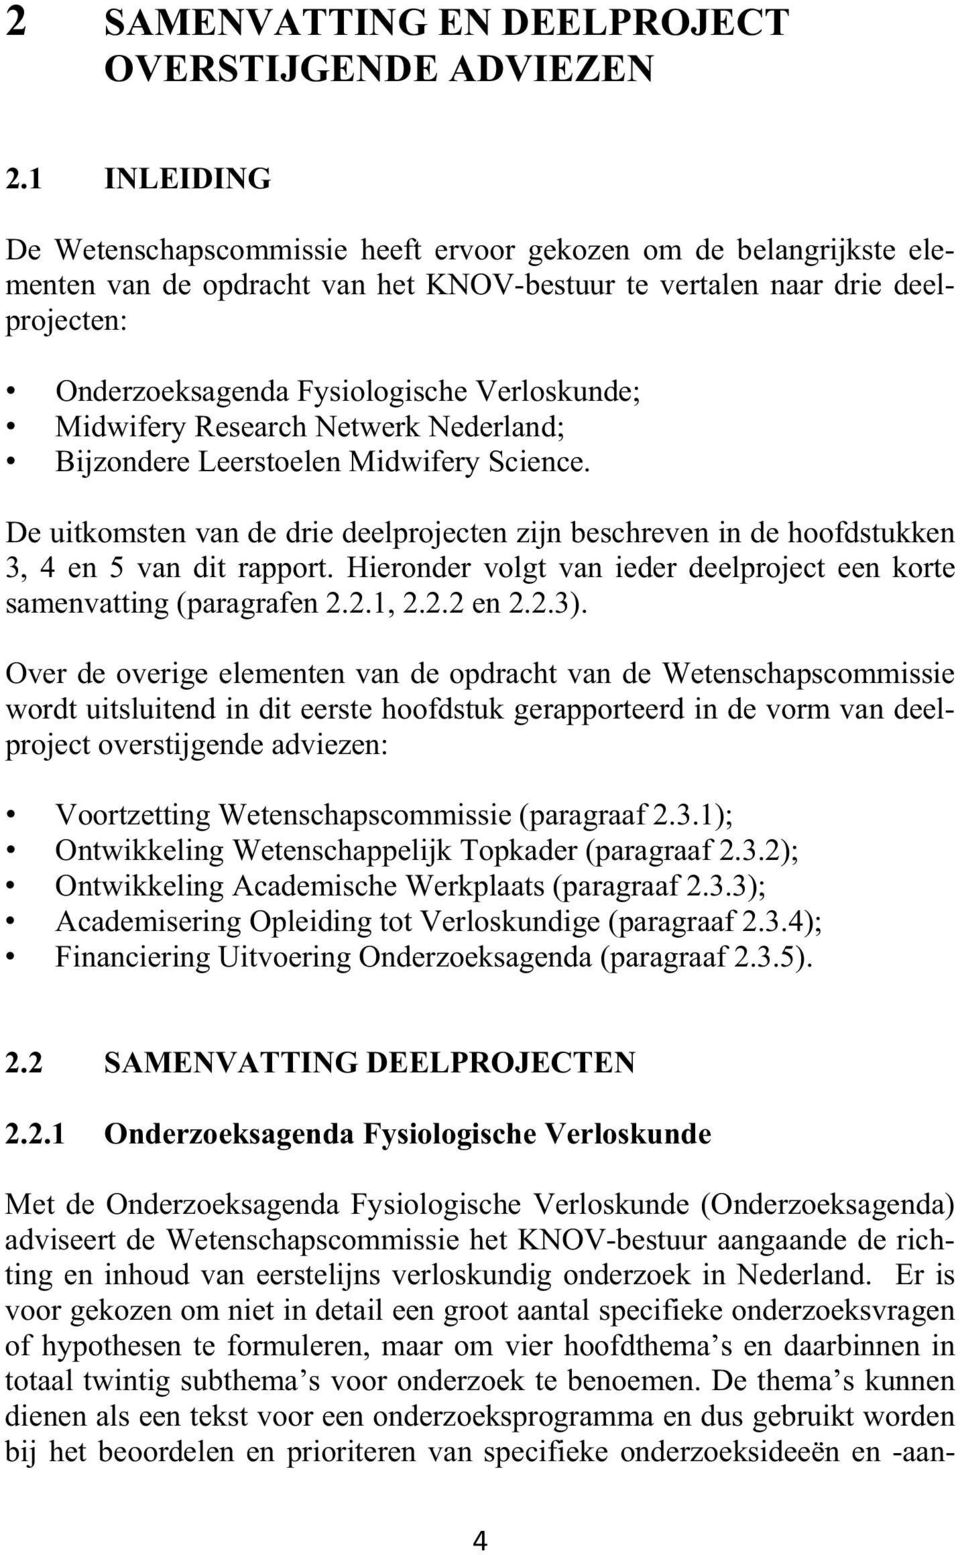 Verloskunde; Midwifery Research Netwerk Nederland; Bijzondere Leerstoelen Midwifery Science. De uitkomsten van de drie deelprojecten zijn beschreven in de hoofdstukken 3, 4 en 5 van dit rapport.